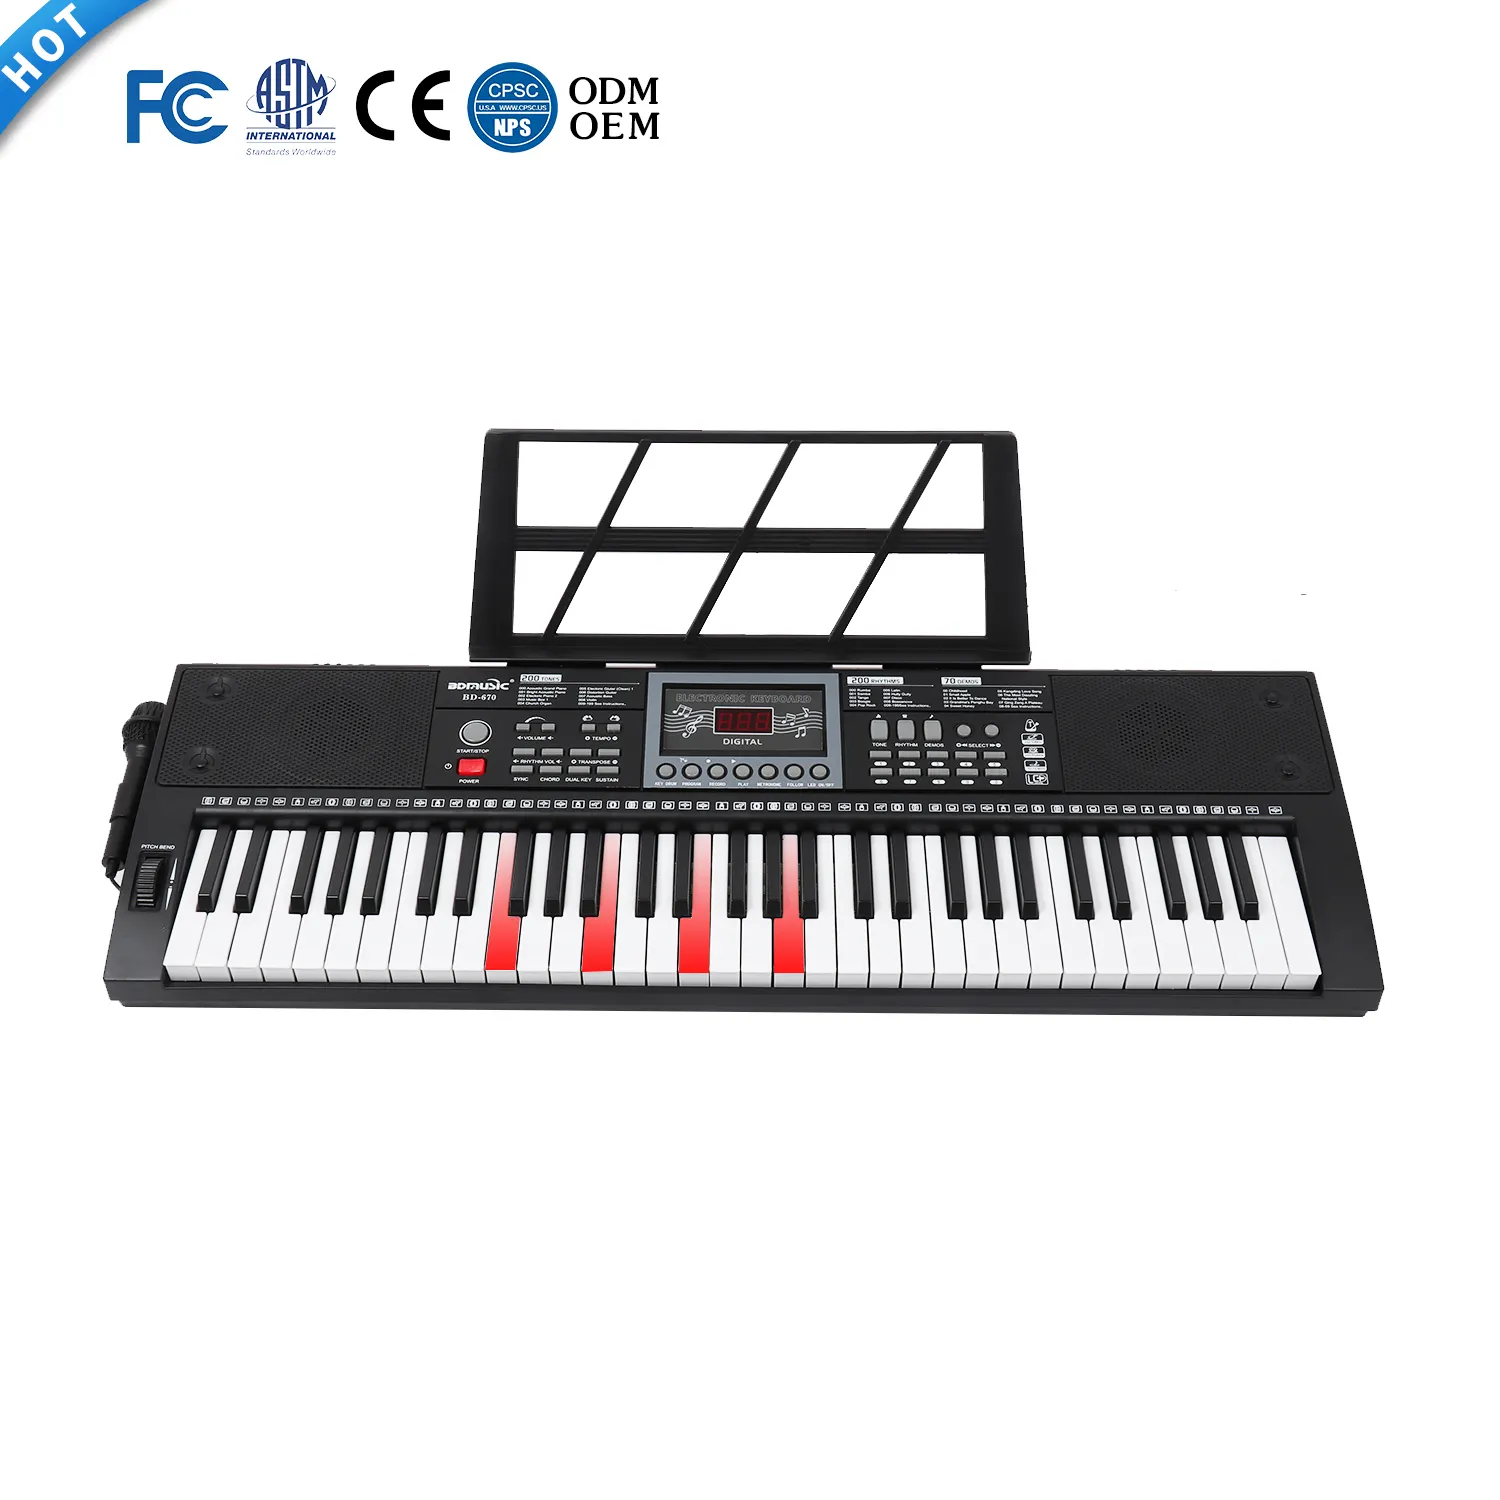 BDMUSIC музыкальное пианино, 61-клавишные клавишные инструменты, синтезатор teclados, сделано в Китае, электронный орган с освещением, распродажа